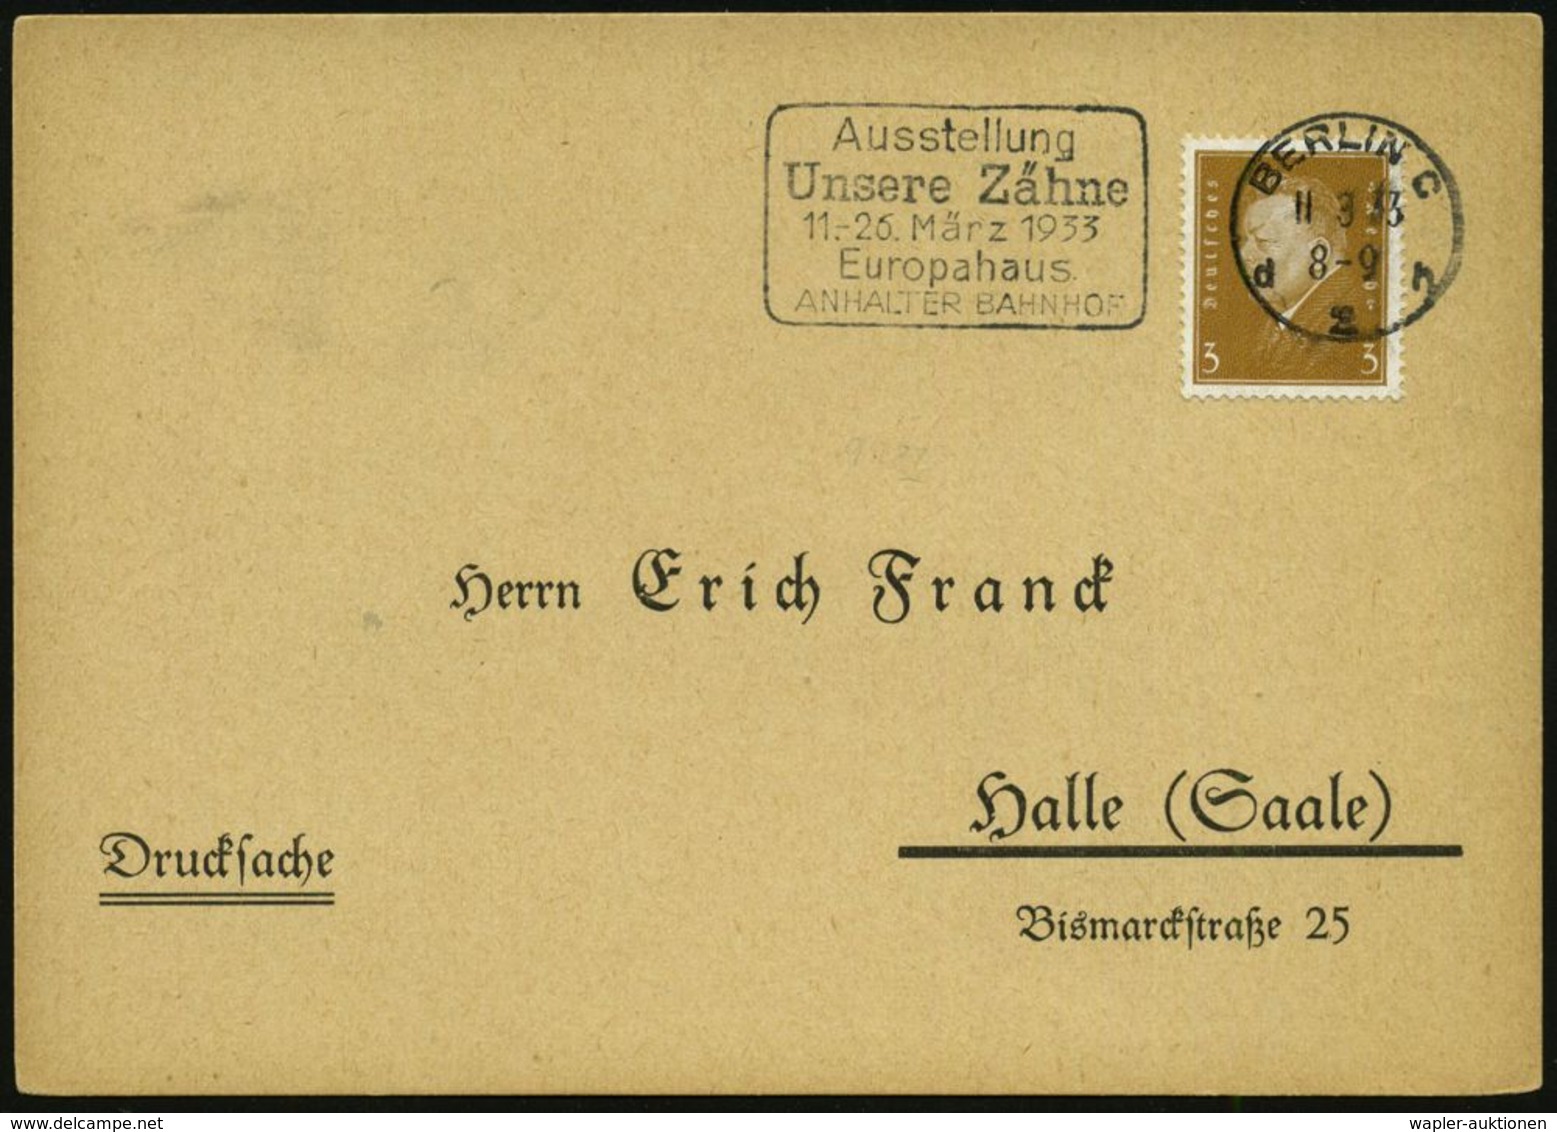 DENTAL-MEDIZIN / ZÄHNE : BERLIN C/ D2h/ Ausstellung/ Unsere Zähne/ ..Europahaus/ ANHALTER BAHNHOF 1933 (11.3.) Seltener  - Maladies